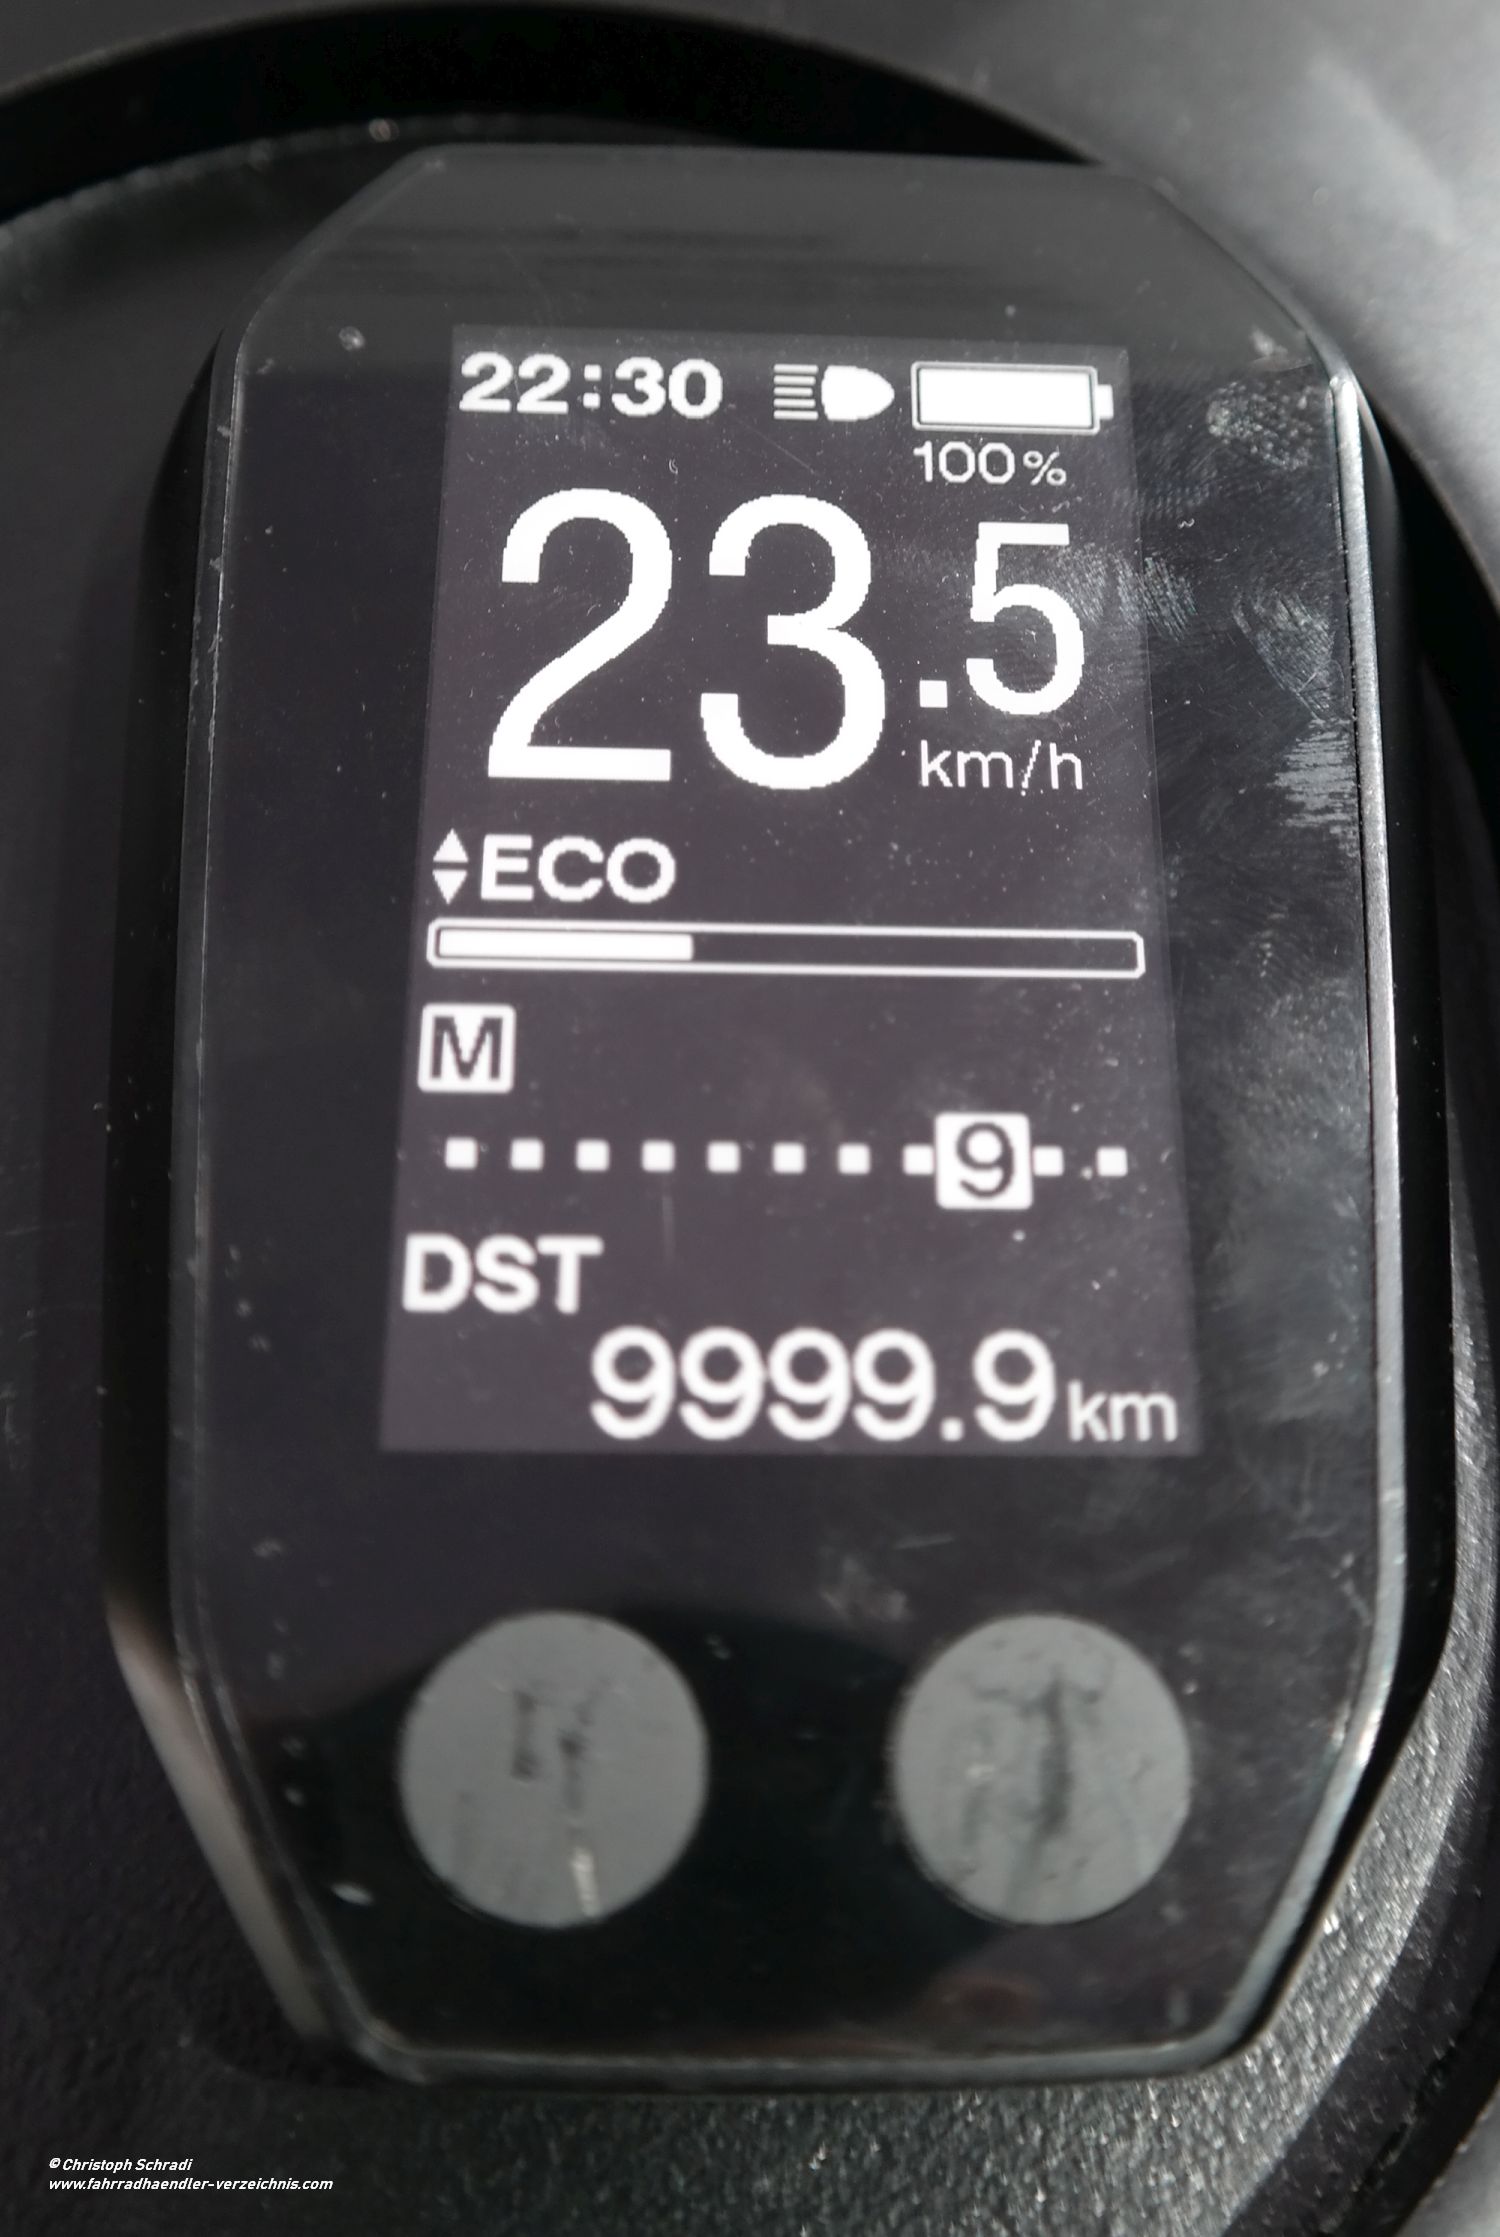 Das Display des Steps E6000 Antriebs von Shimano für Citybikes und Trekkingräder